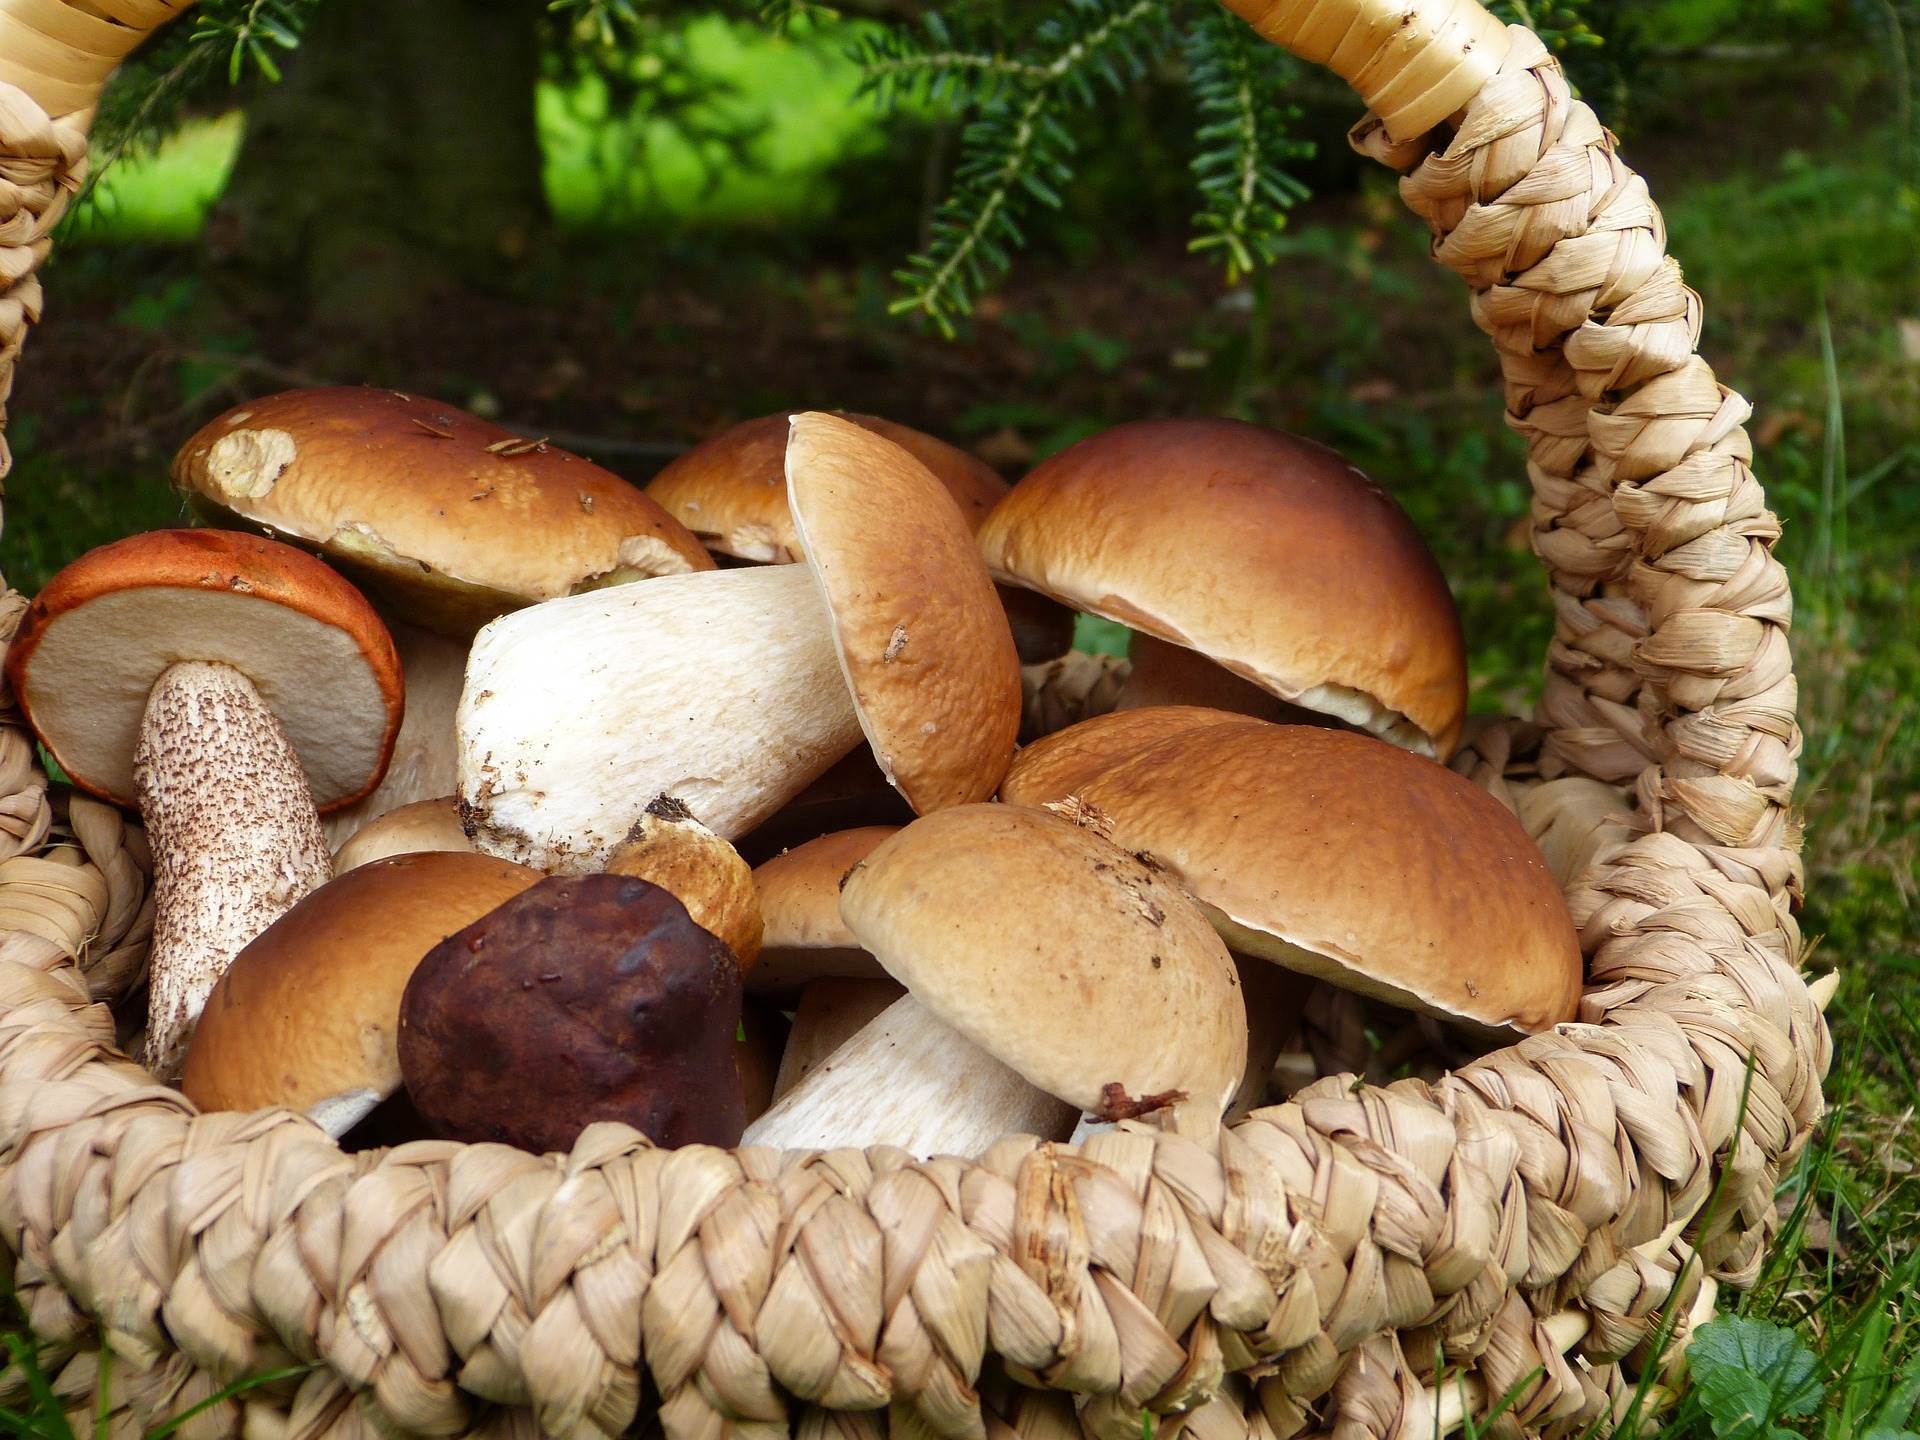  gljive gljivarenje pravilnik republika srpska dva kilograma 